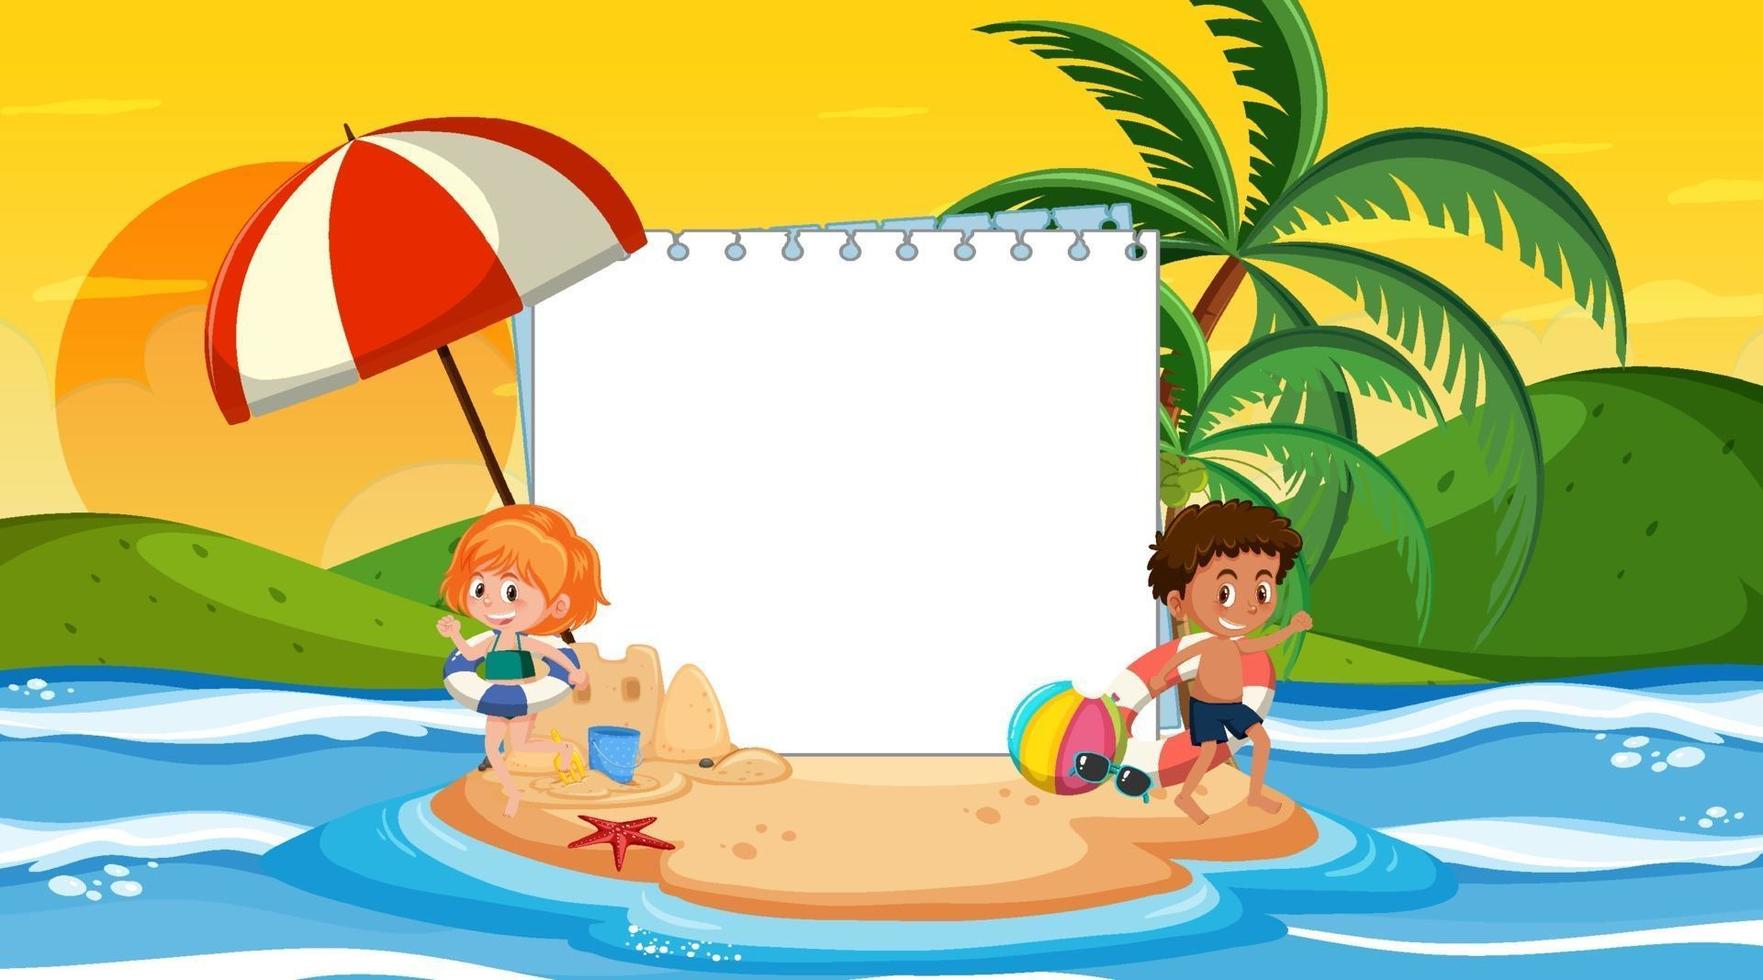 leere Fahnenschablone mit Kindern im Urlaub an der Strandsonnenuntergangsszene vektor